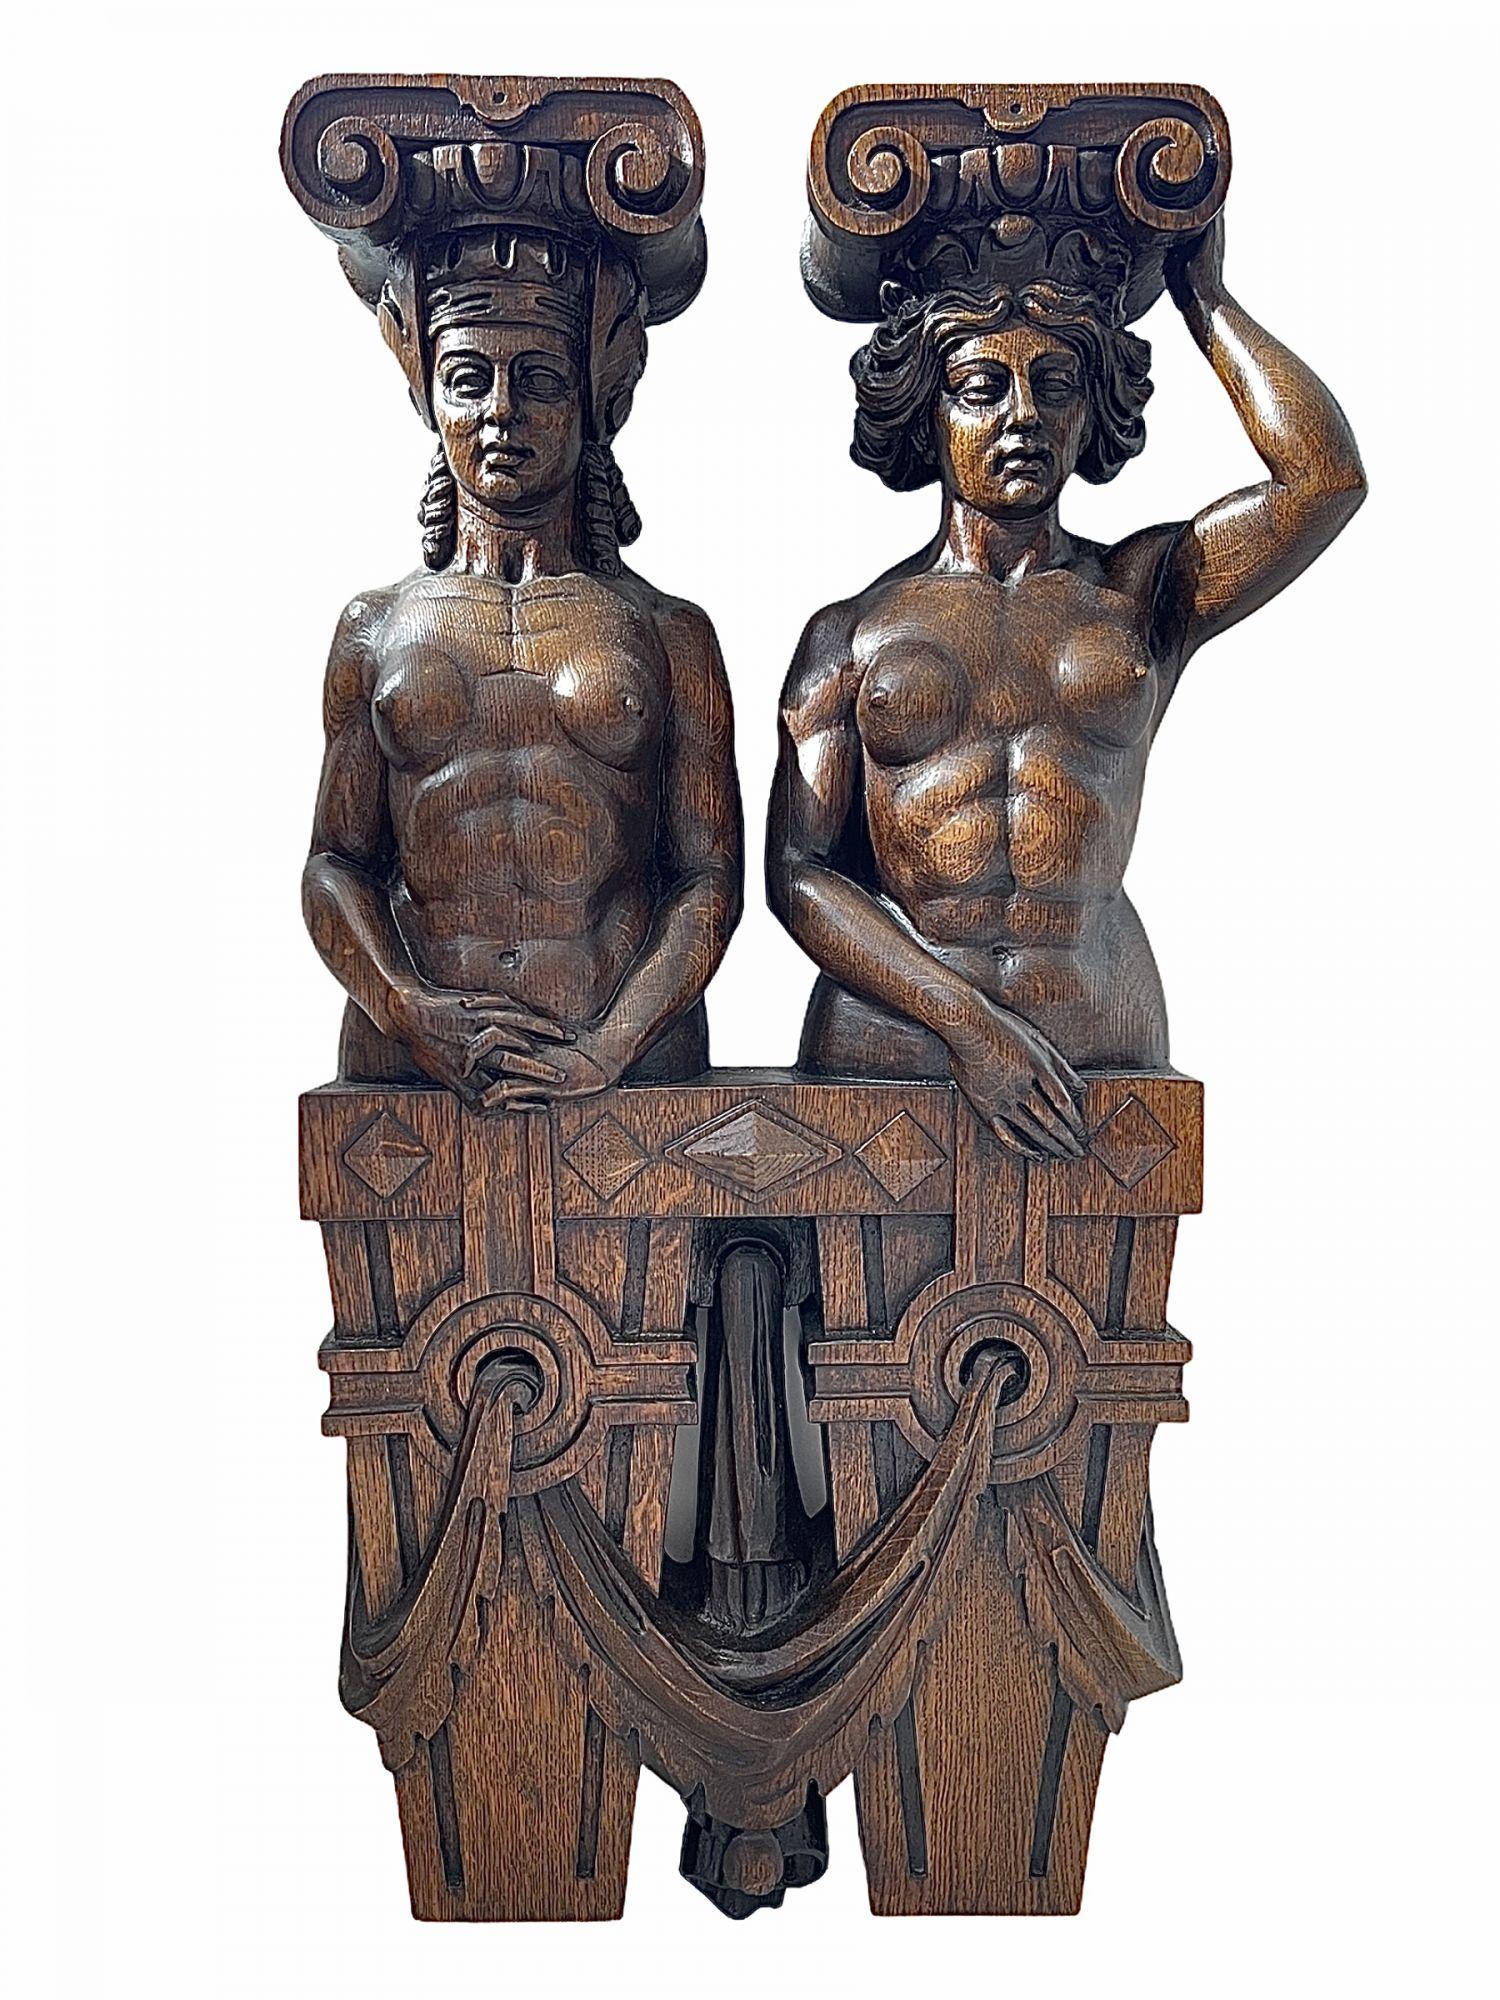 Frühes 19. Jahrhundert Paar deutsche Karyatidenfiguren aus Eiche mit Darstellung des Historismus (Romantik)